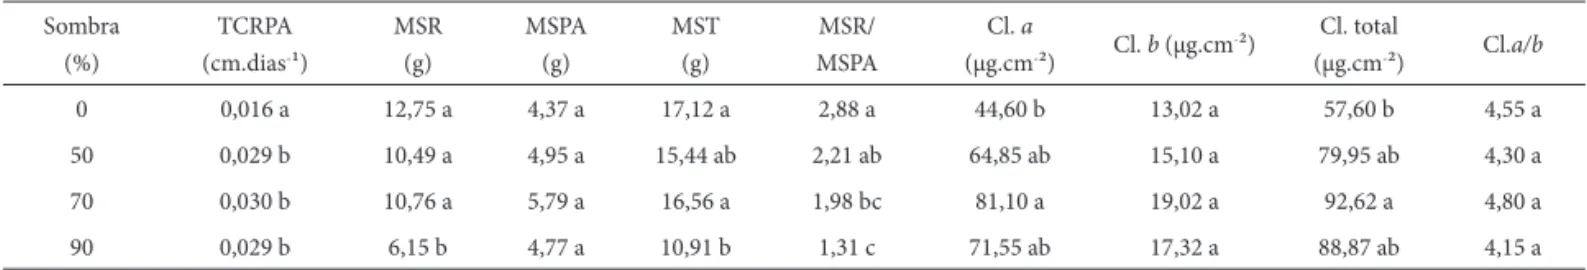 Tabela 1. Taxa de crescimento relativo da parte aérea (TCRPA), massa seca da raiz (MSR), parte aérea (MSPA), total (MST), relação raiz/parte aérea (MSR/MSPA),  clorofi la a (Cl a), b (Cl b), clorofi la total (Cl total) e razão clorofi la a/b (Cl a/b) das p